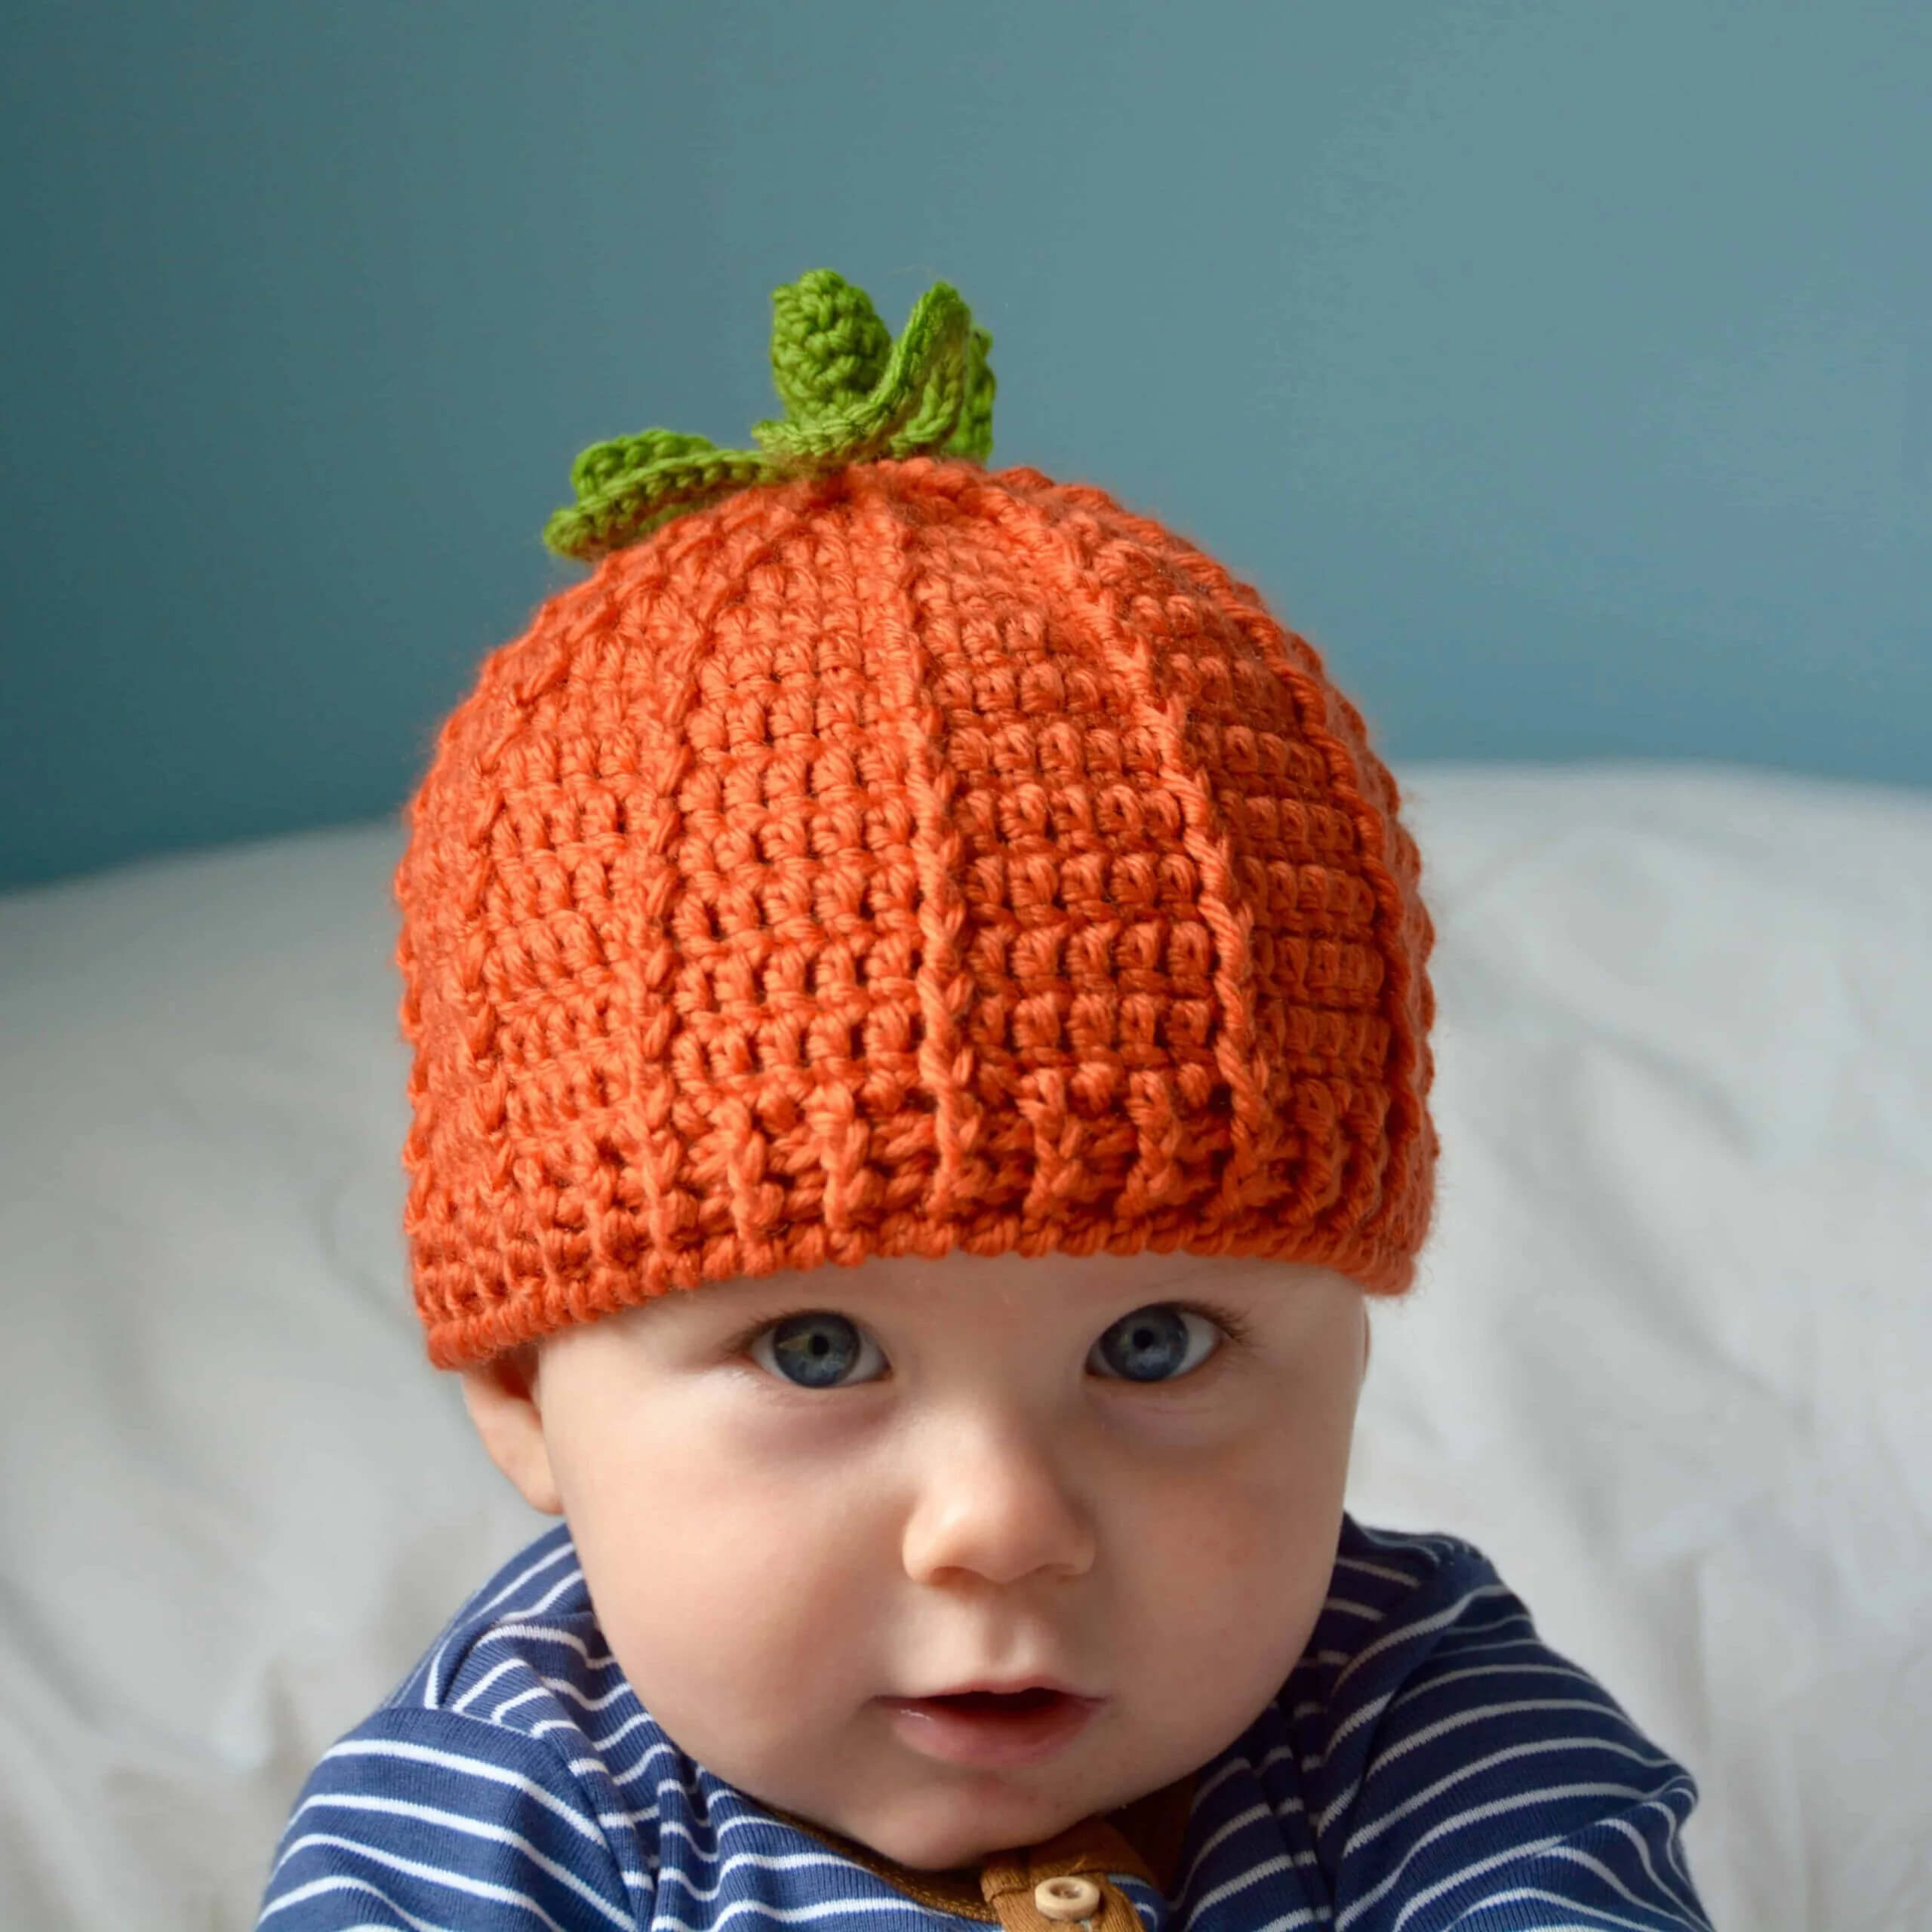 Super Cute Crocheted Pumpkin Hat For Toddlers Crochet Pumpkin Patterns